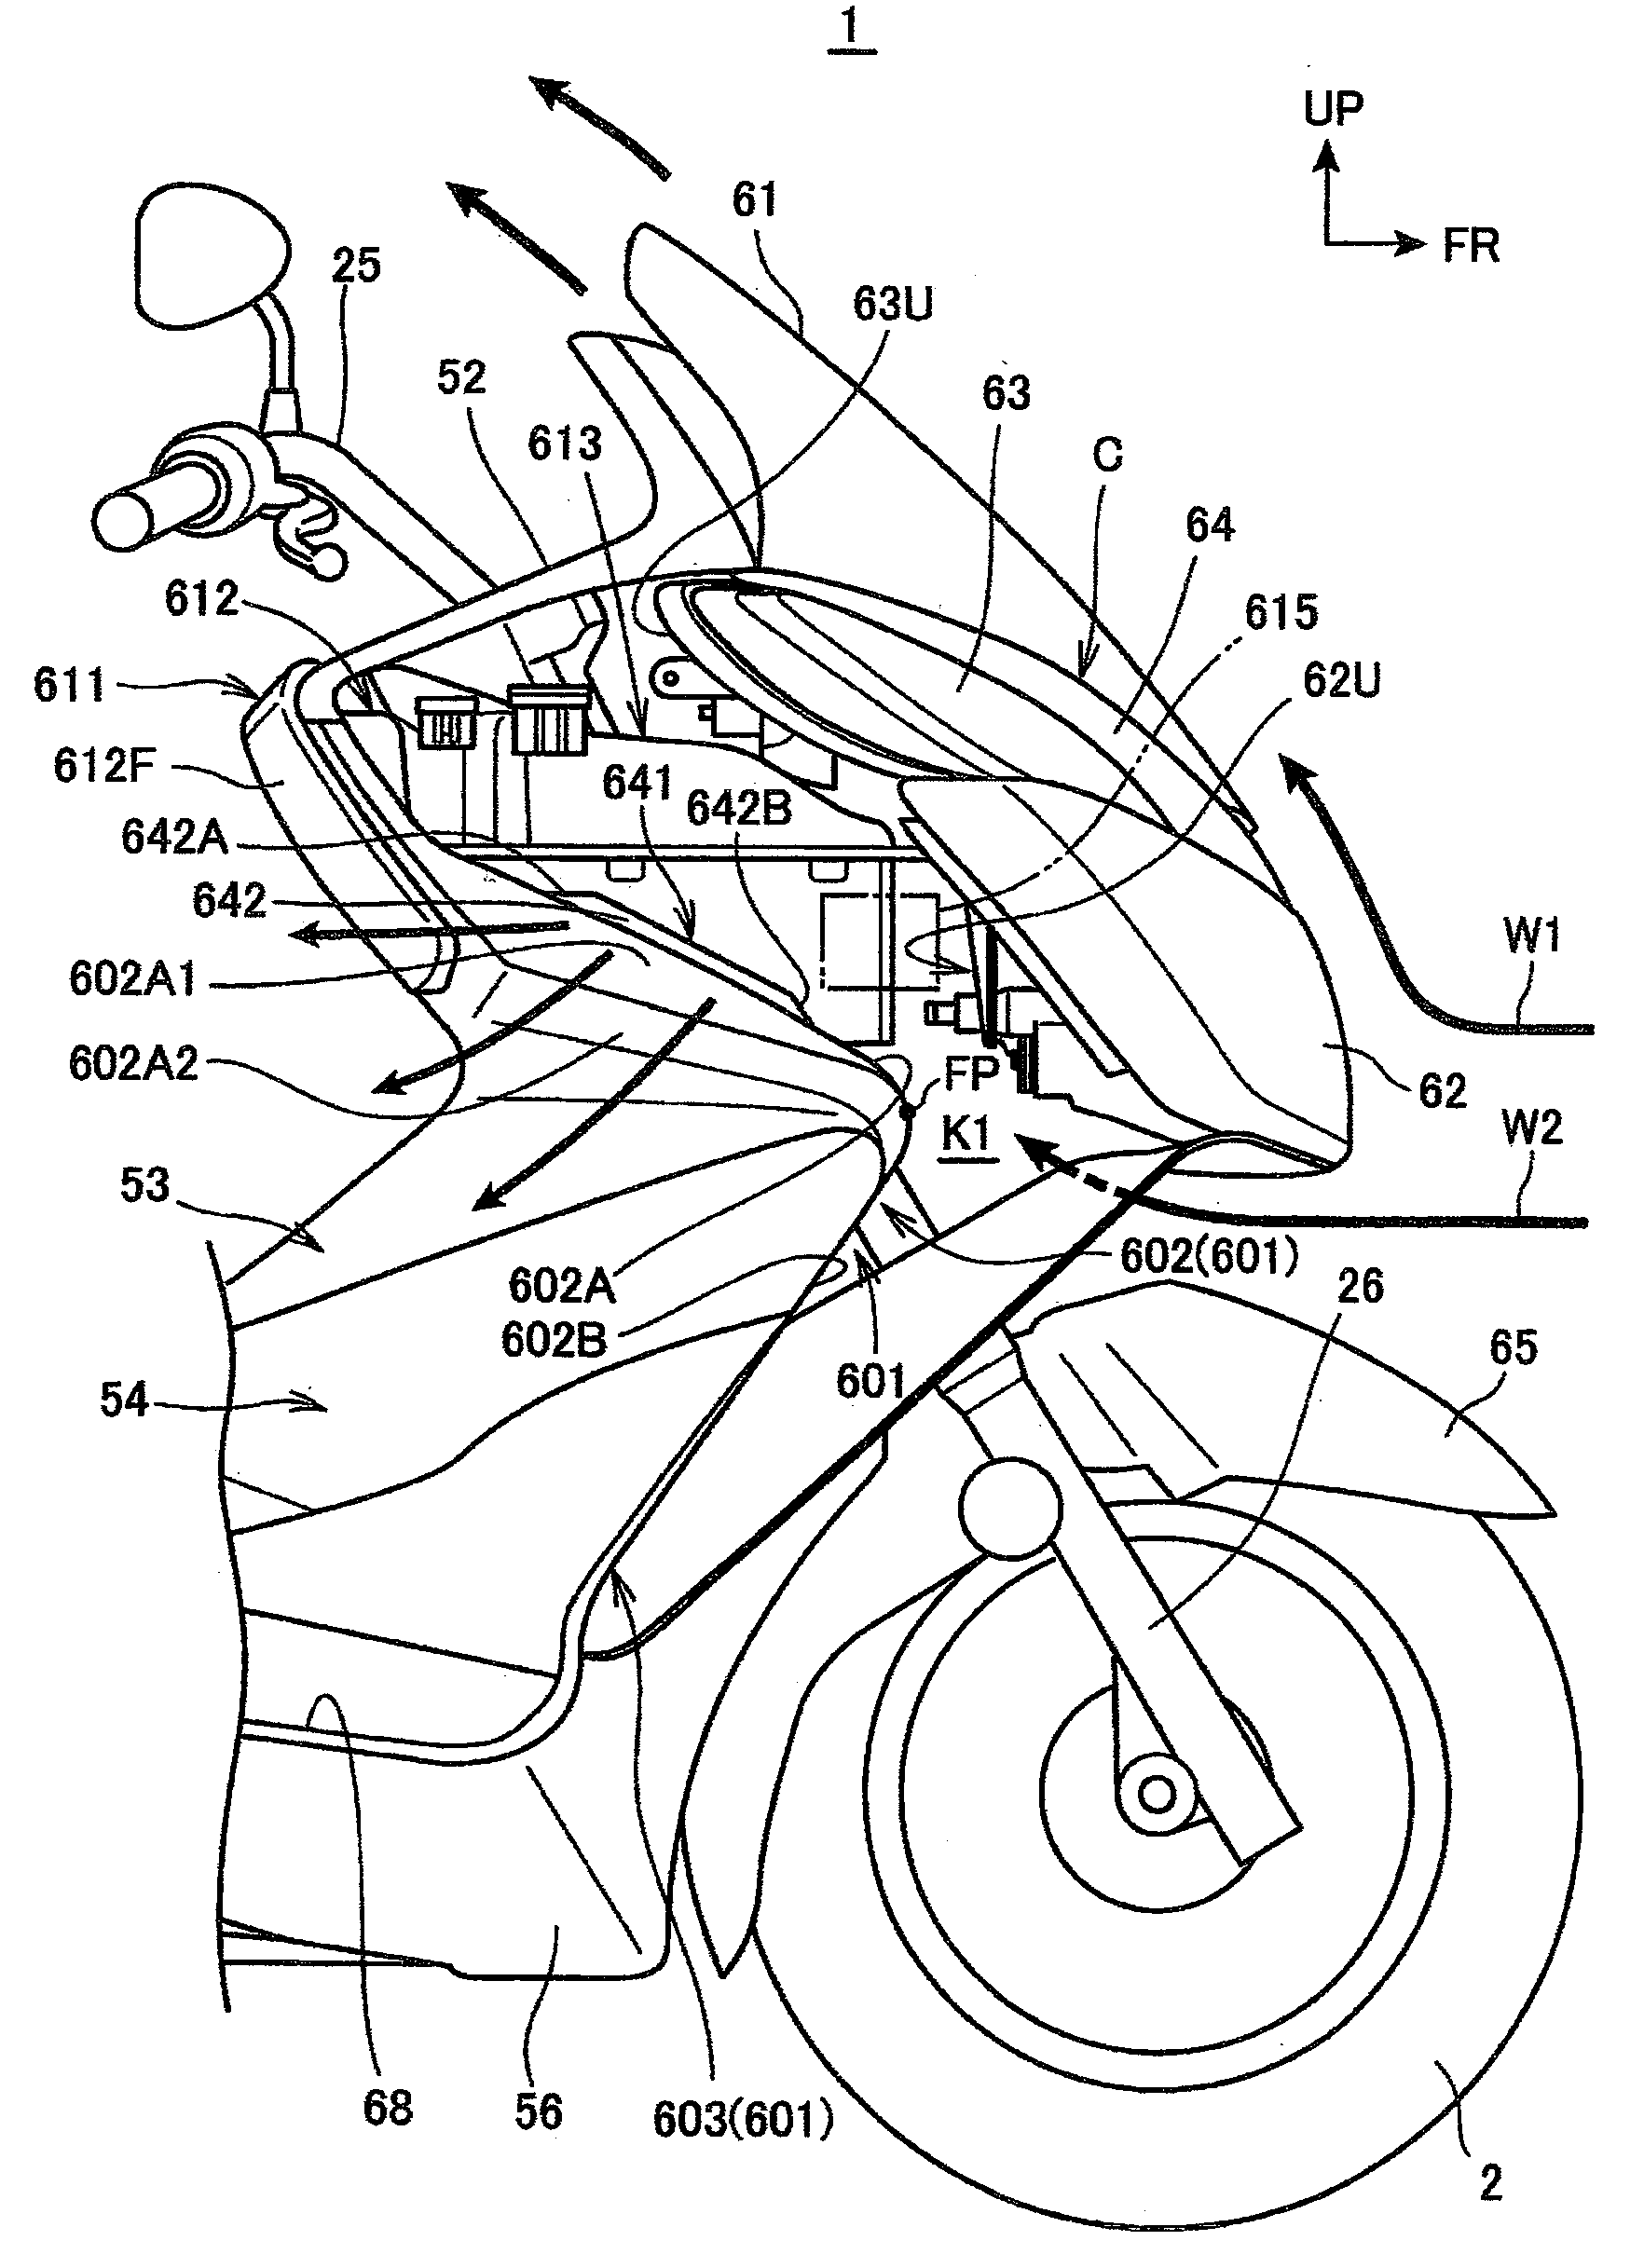 Windbreak structure for saddle type vehicle